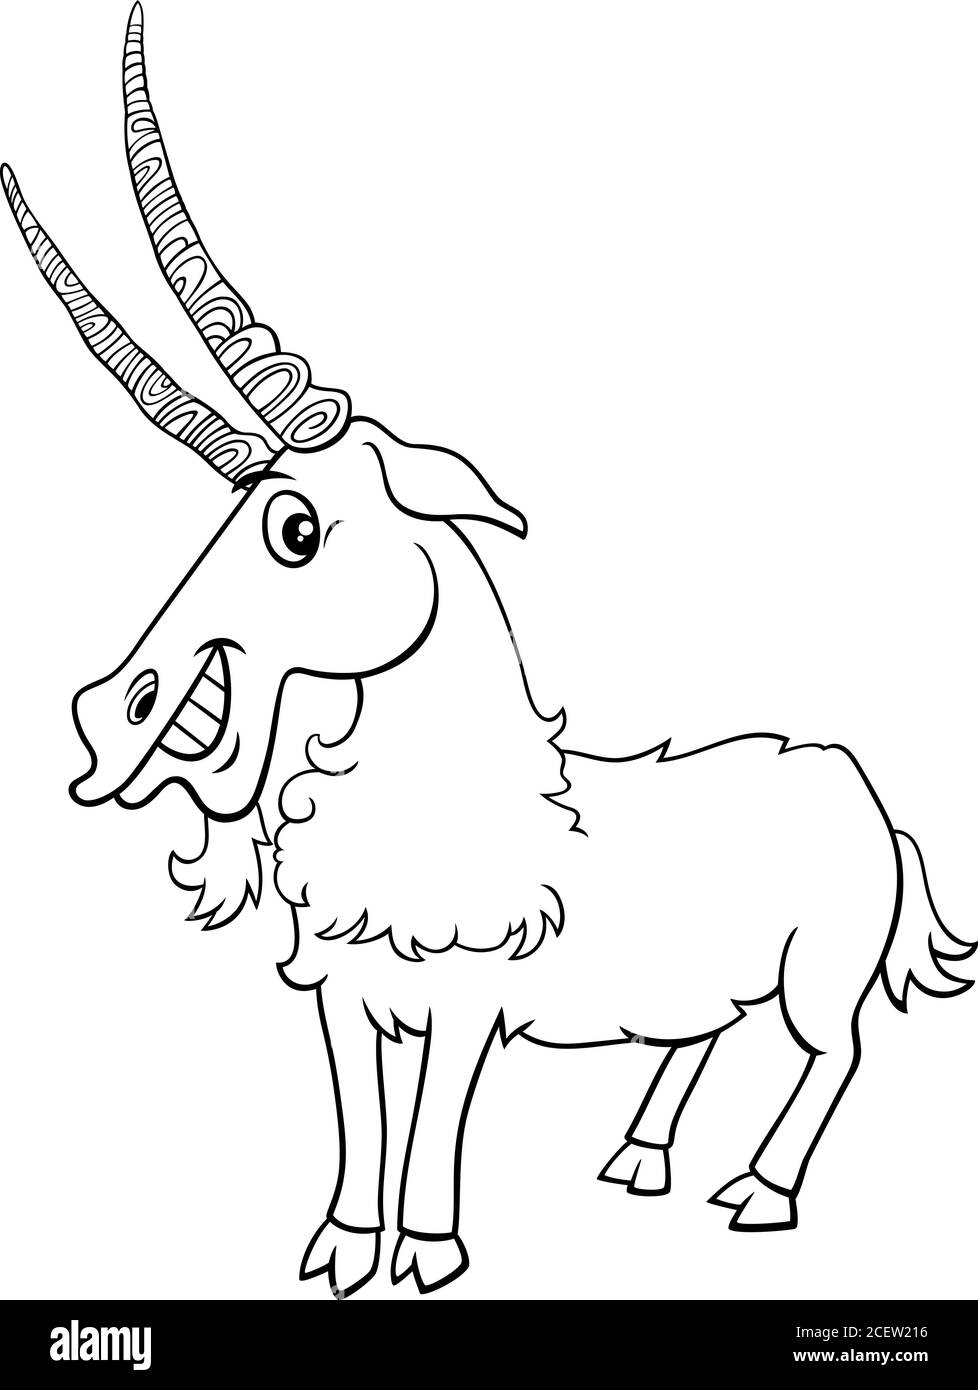 Negro y Blanco Cartoon Ilustración de Funny Goat Granja Animal O Capricornio personaje de color Libro de la página Ilustración del Vector